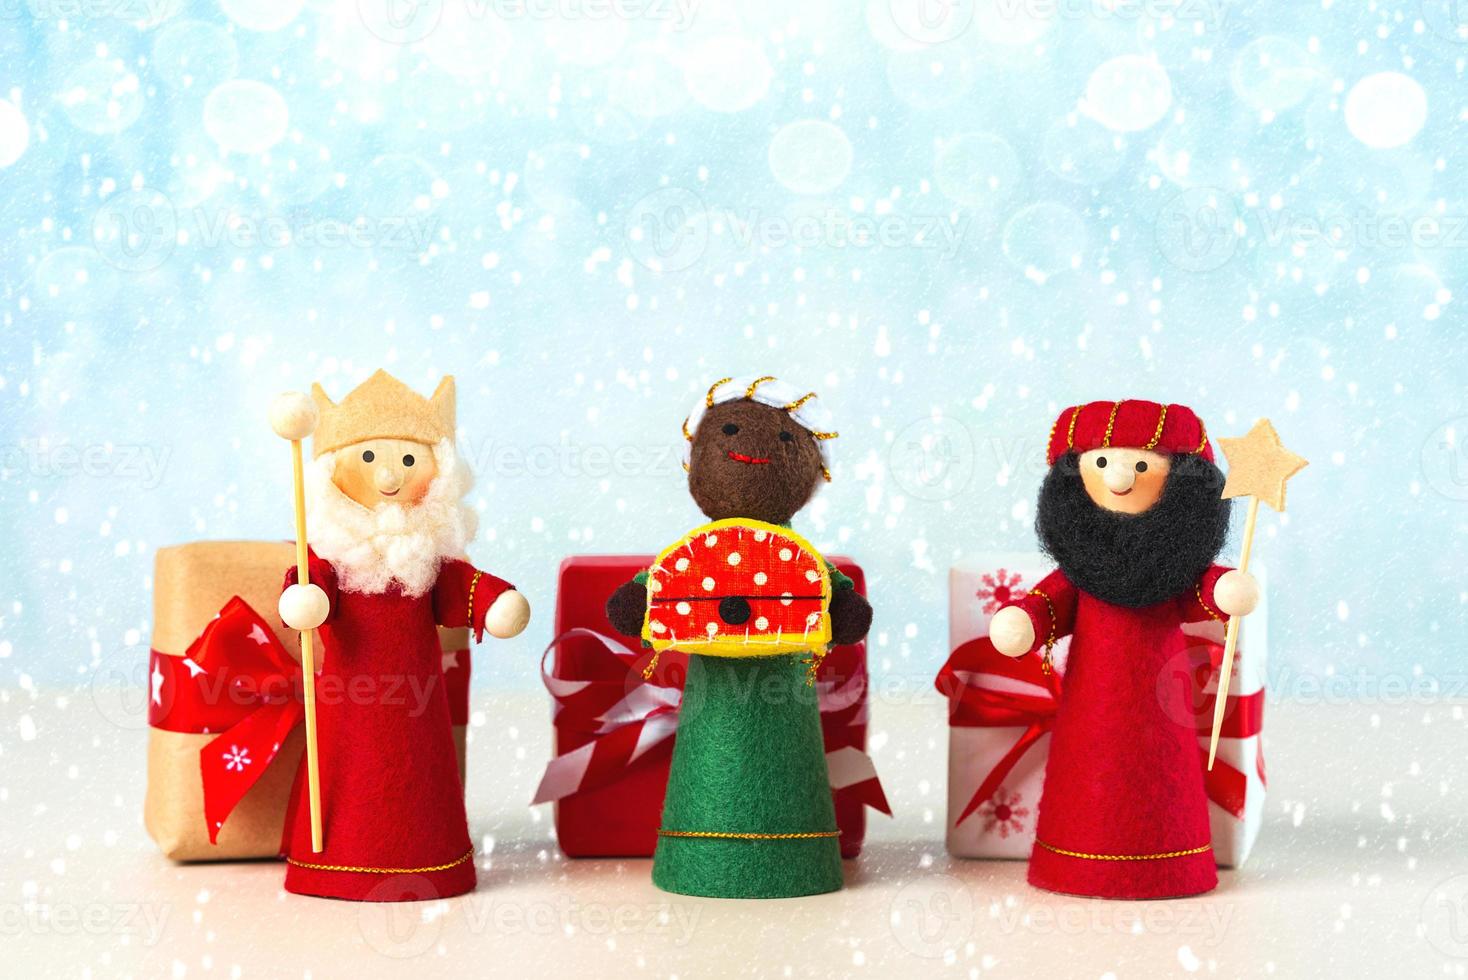 de drie wijs mannen met Kerstmis cadeaus en sneeuwvlokken. concept voor reyes magos dag drie wijs mannen foto